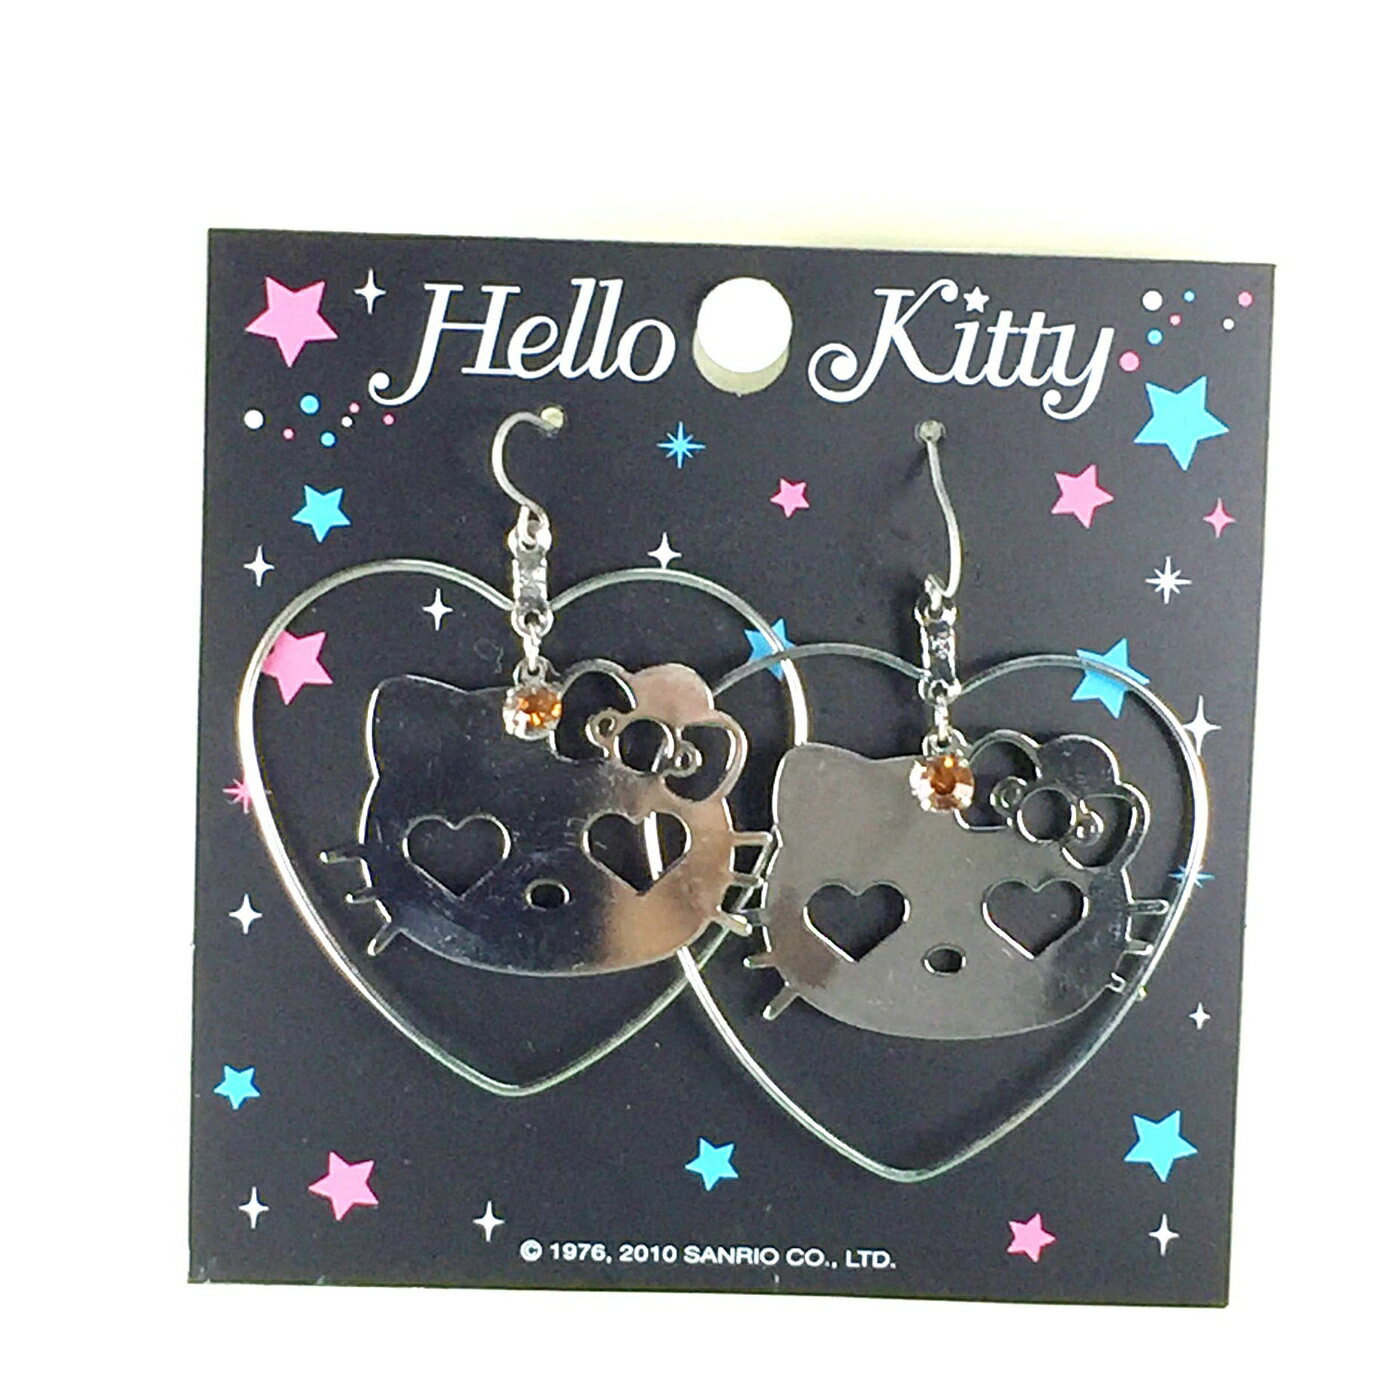 【震撼精品百貨】Hello Kitty 凱蒂貓 造型耳環-大臉愛心造型 震撼日式精品百貨